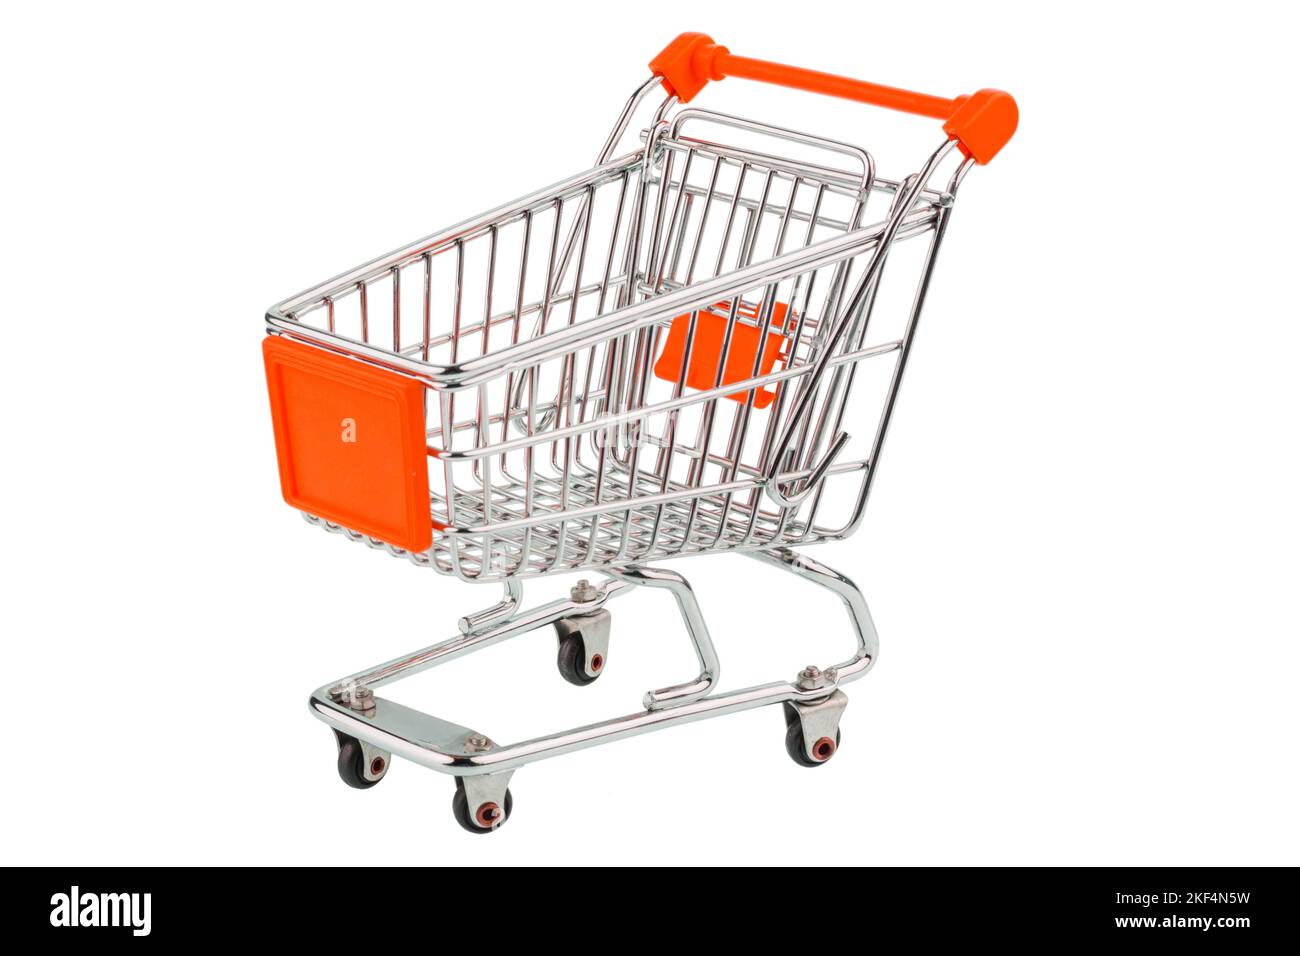 Ein leerer Einkaufswagen auf weißem Hintergrund. Symbolfoto für Einkaufen, Shoppng, Lebensmittelpreise, Inflation, Teuerungsrate, Stock Photo